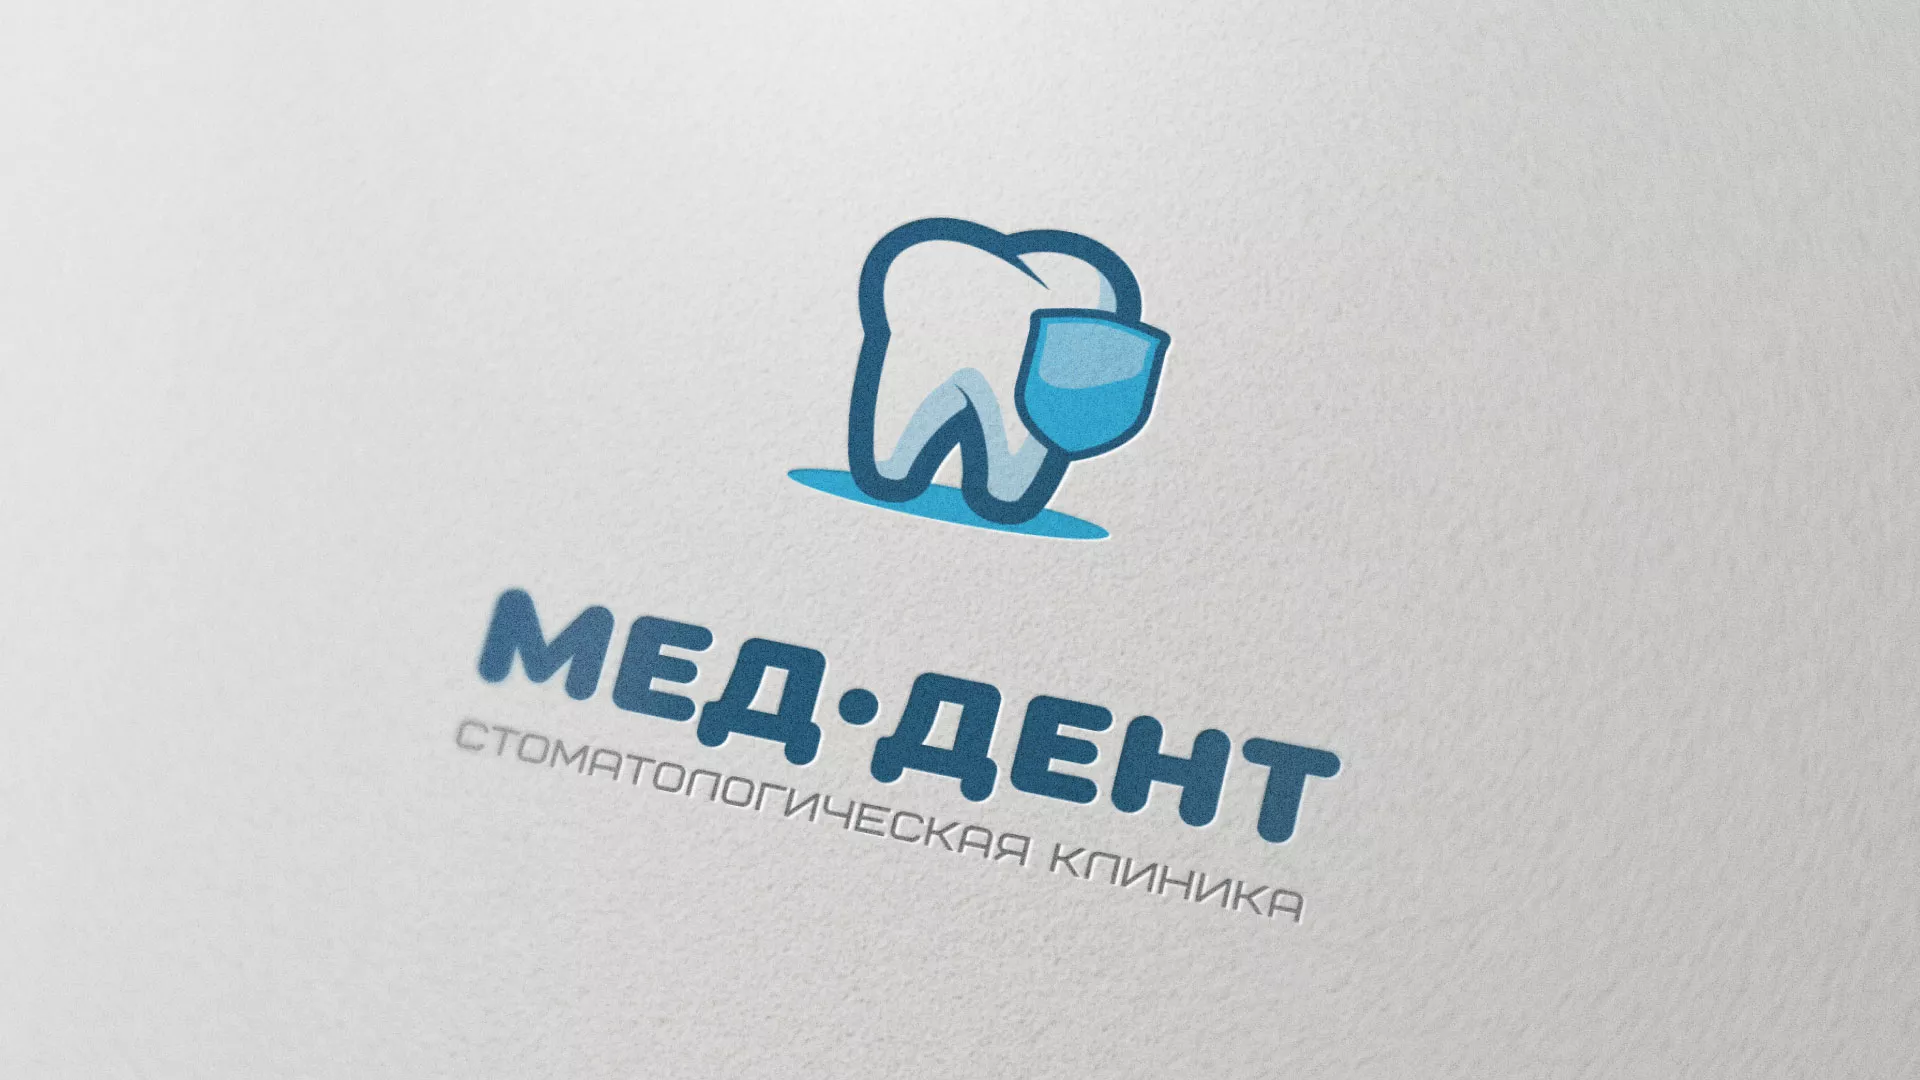 Разработка логотипа стоматологической клиники «МЕД-ДЕНТ» в Чкаловском